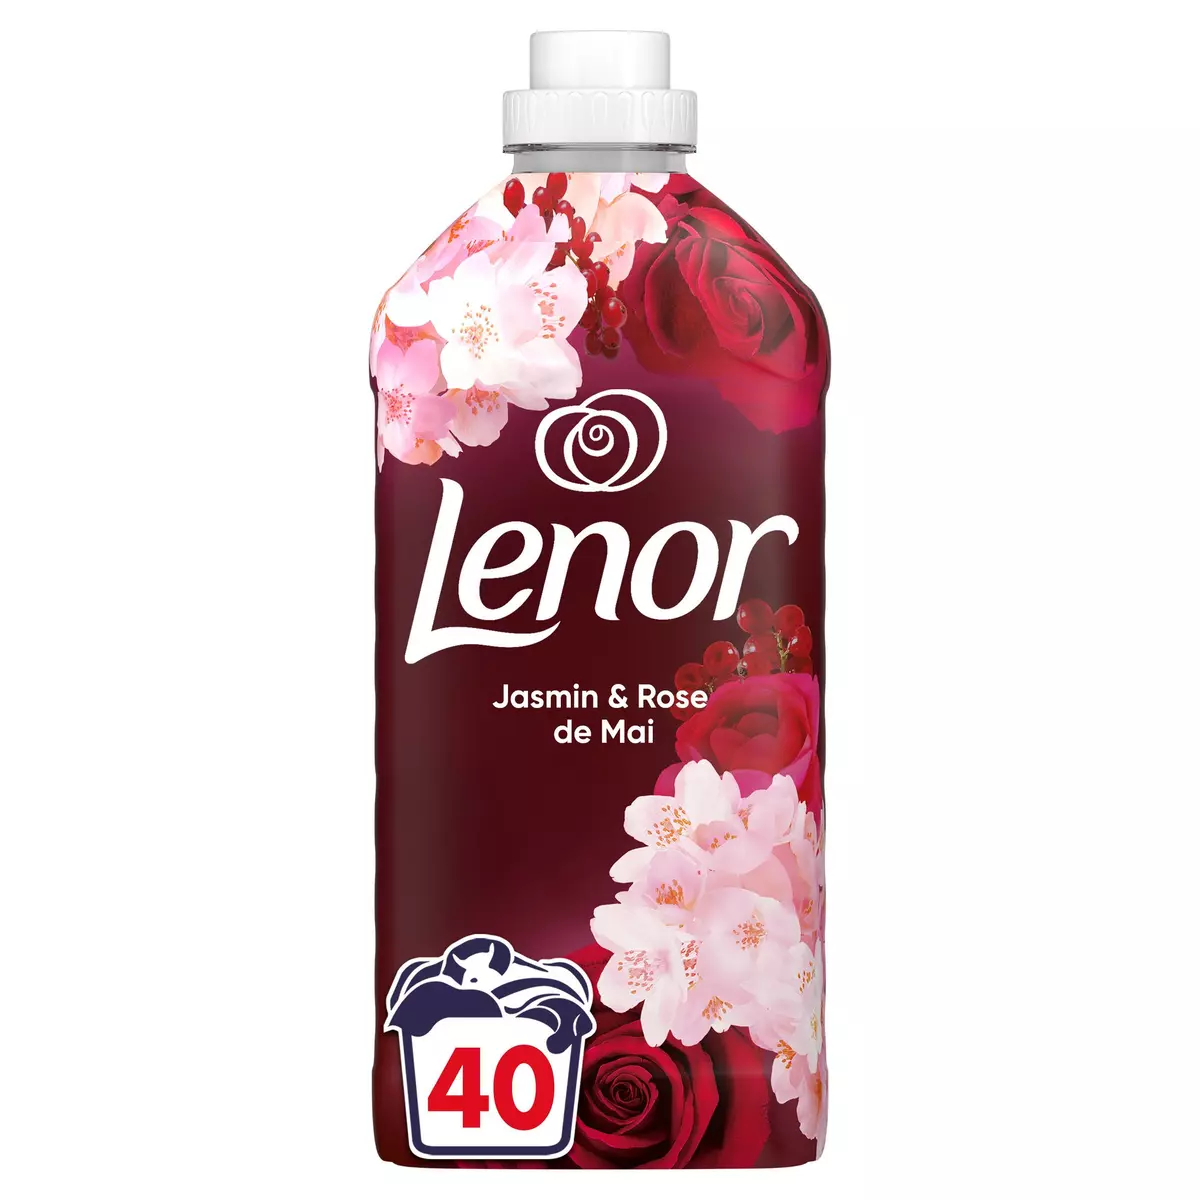 LENOR Adoucissant liquide jasmin et rose de Mai 40 lavages 840ml